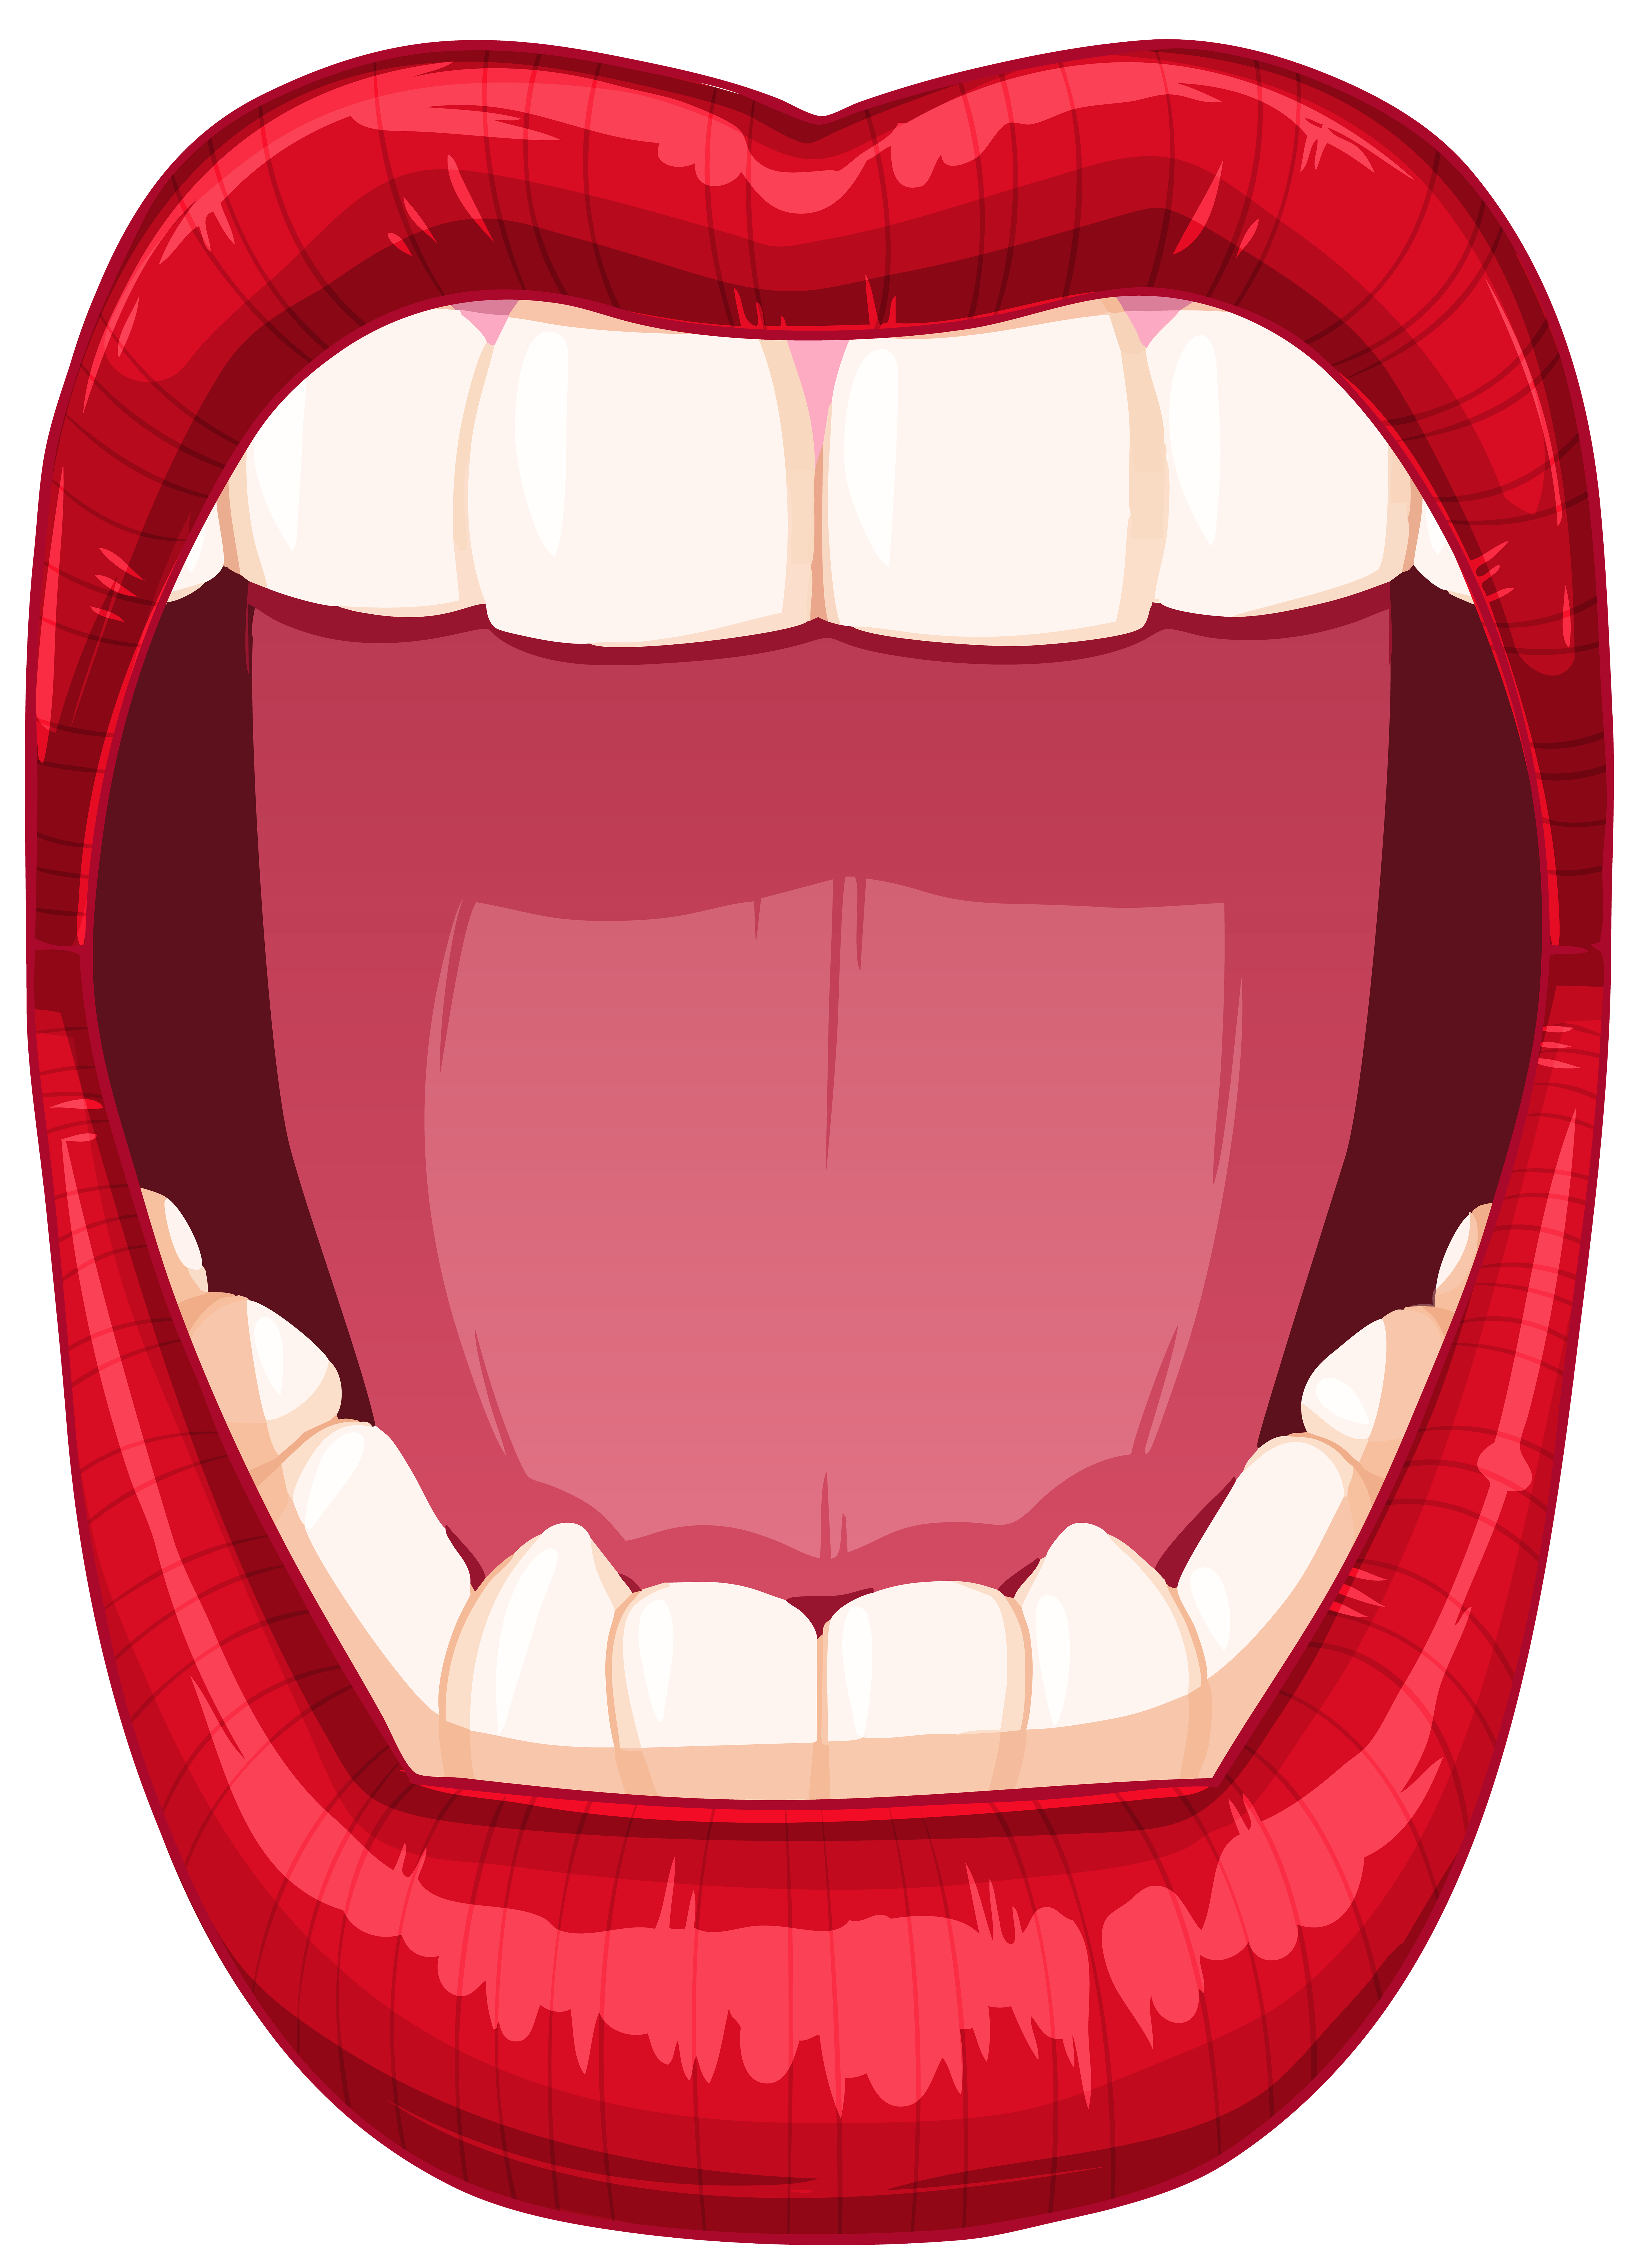 Mouth Illustration Png - Download Illustration 2020